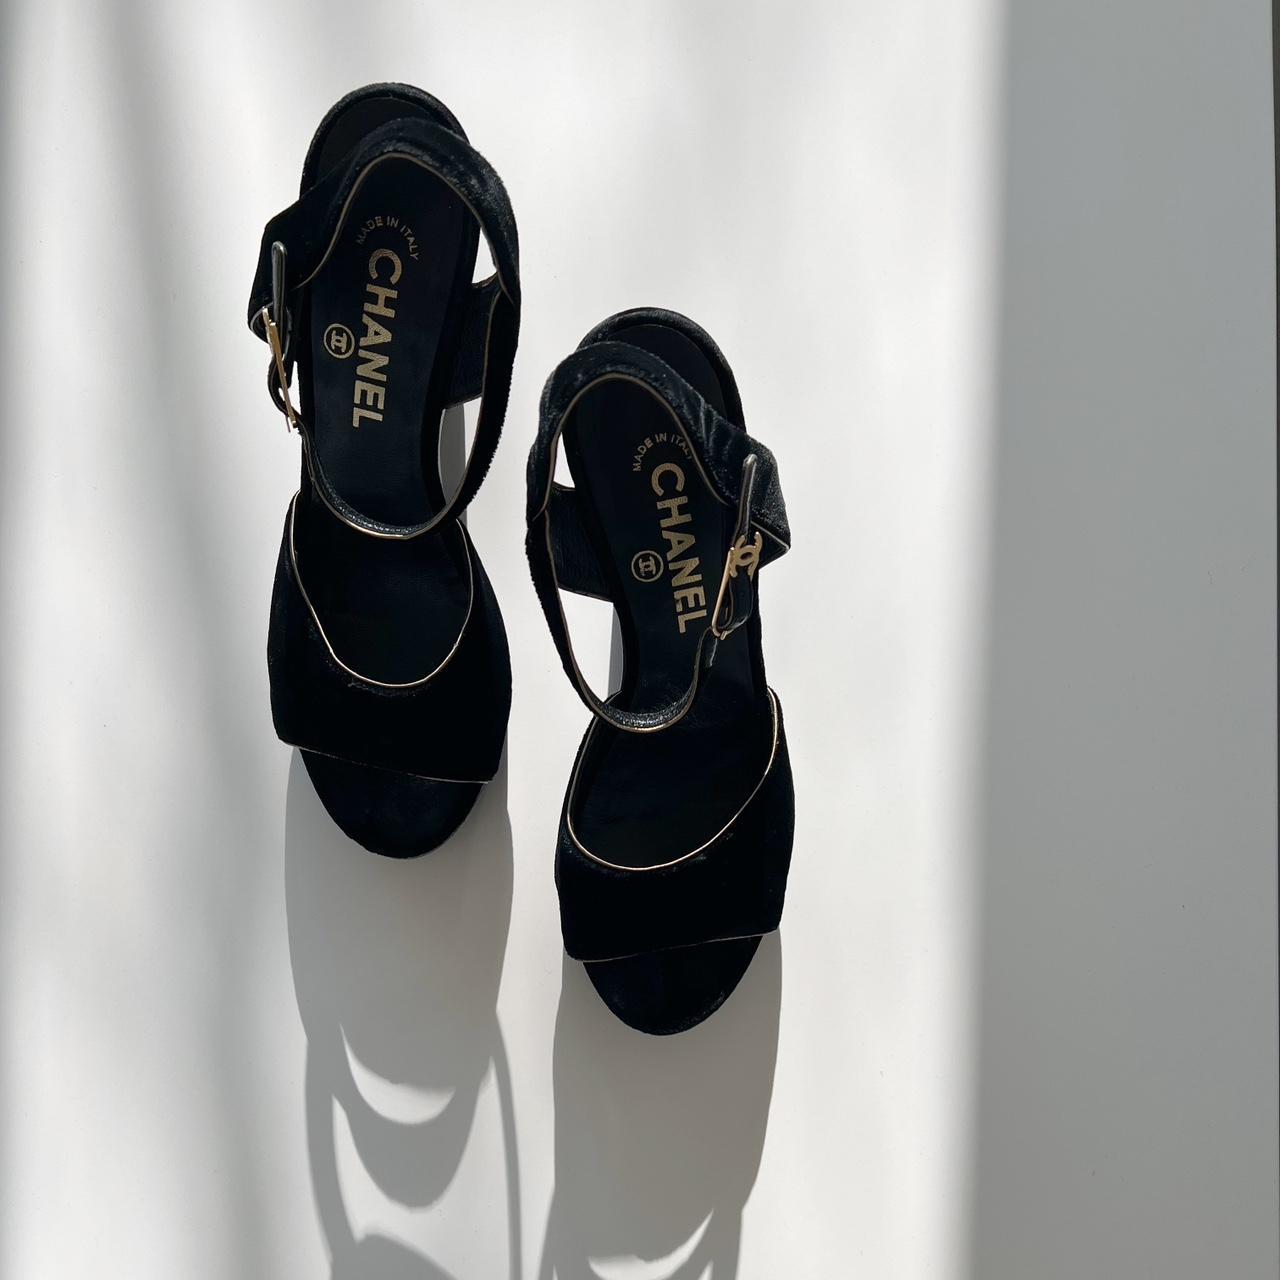 Chanel heels. Made of velvet and gold shimmer - Depop